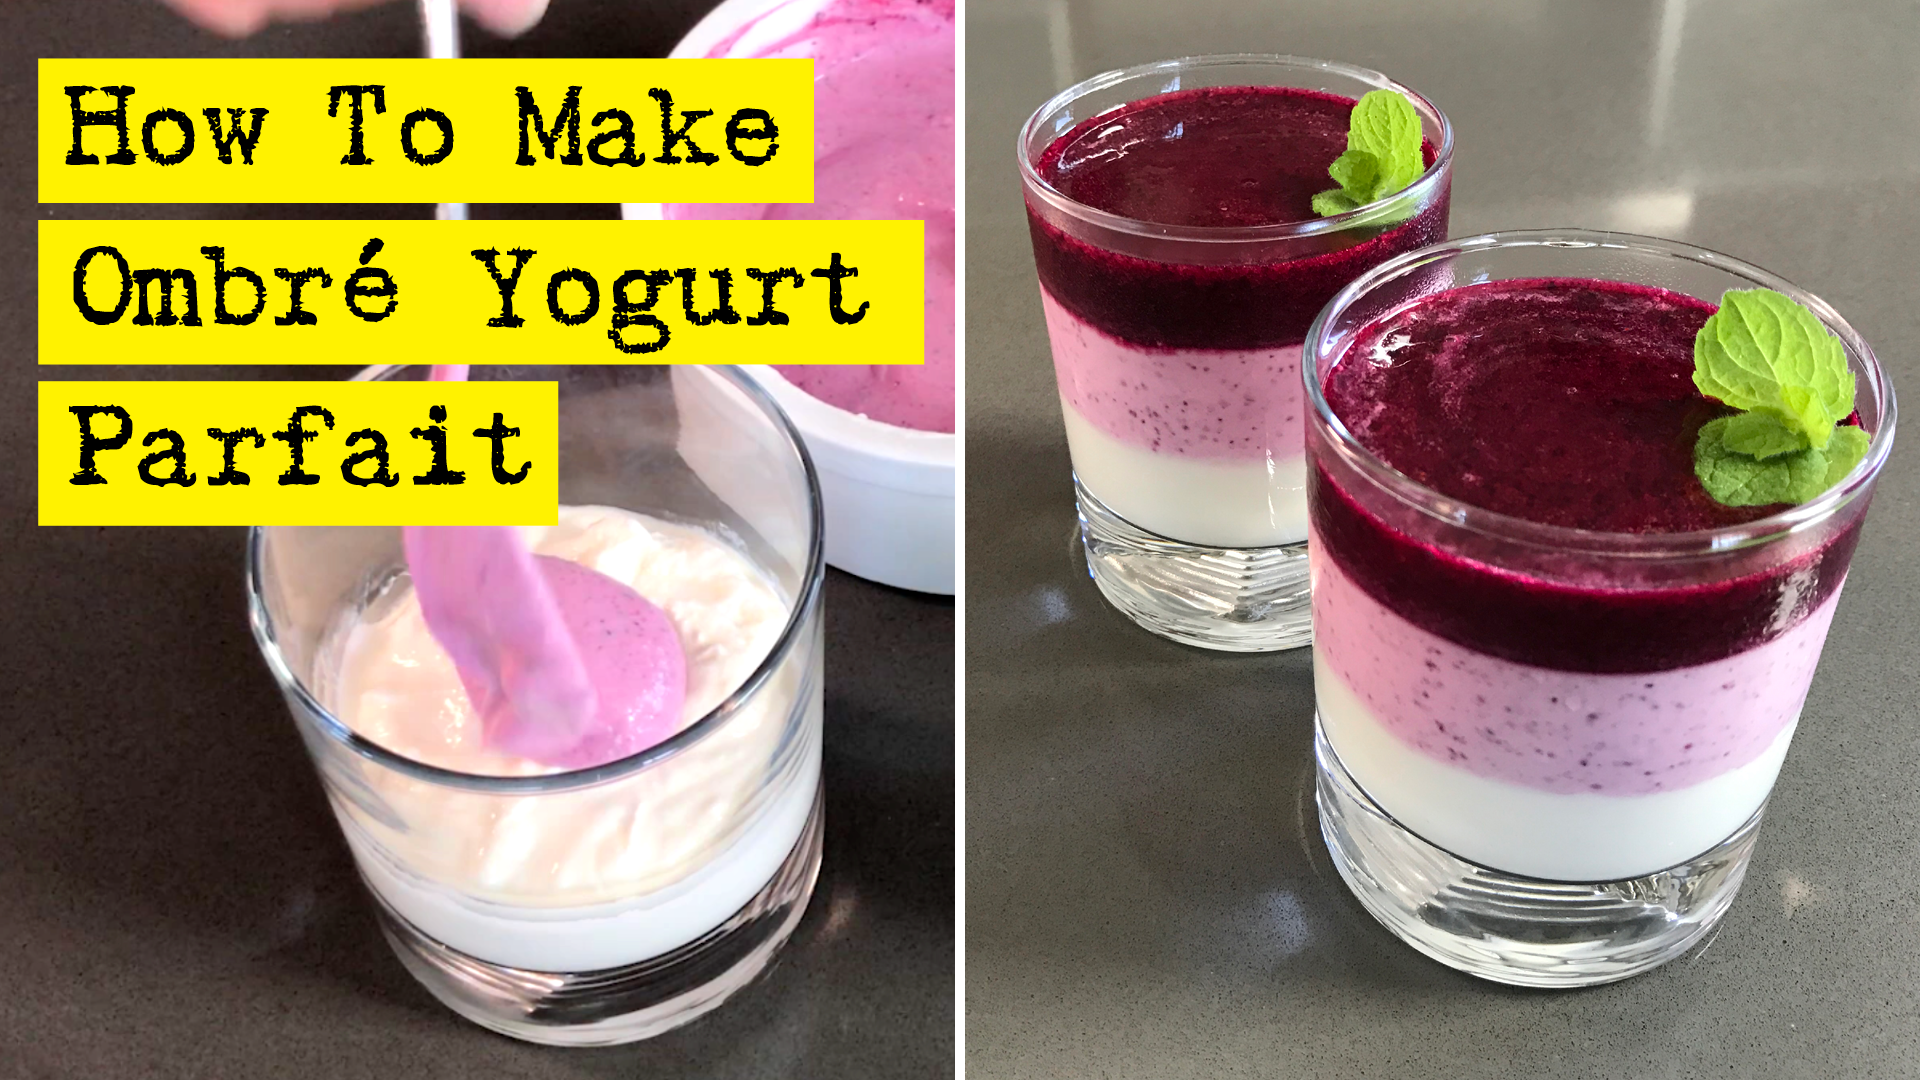 How To Make Ombré Yogurt Parfait, by DIY Presto!